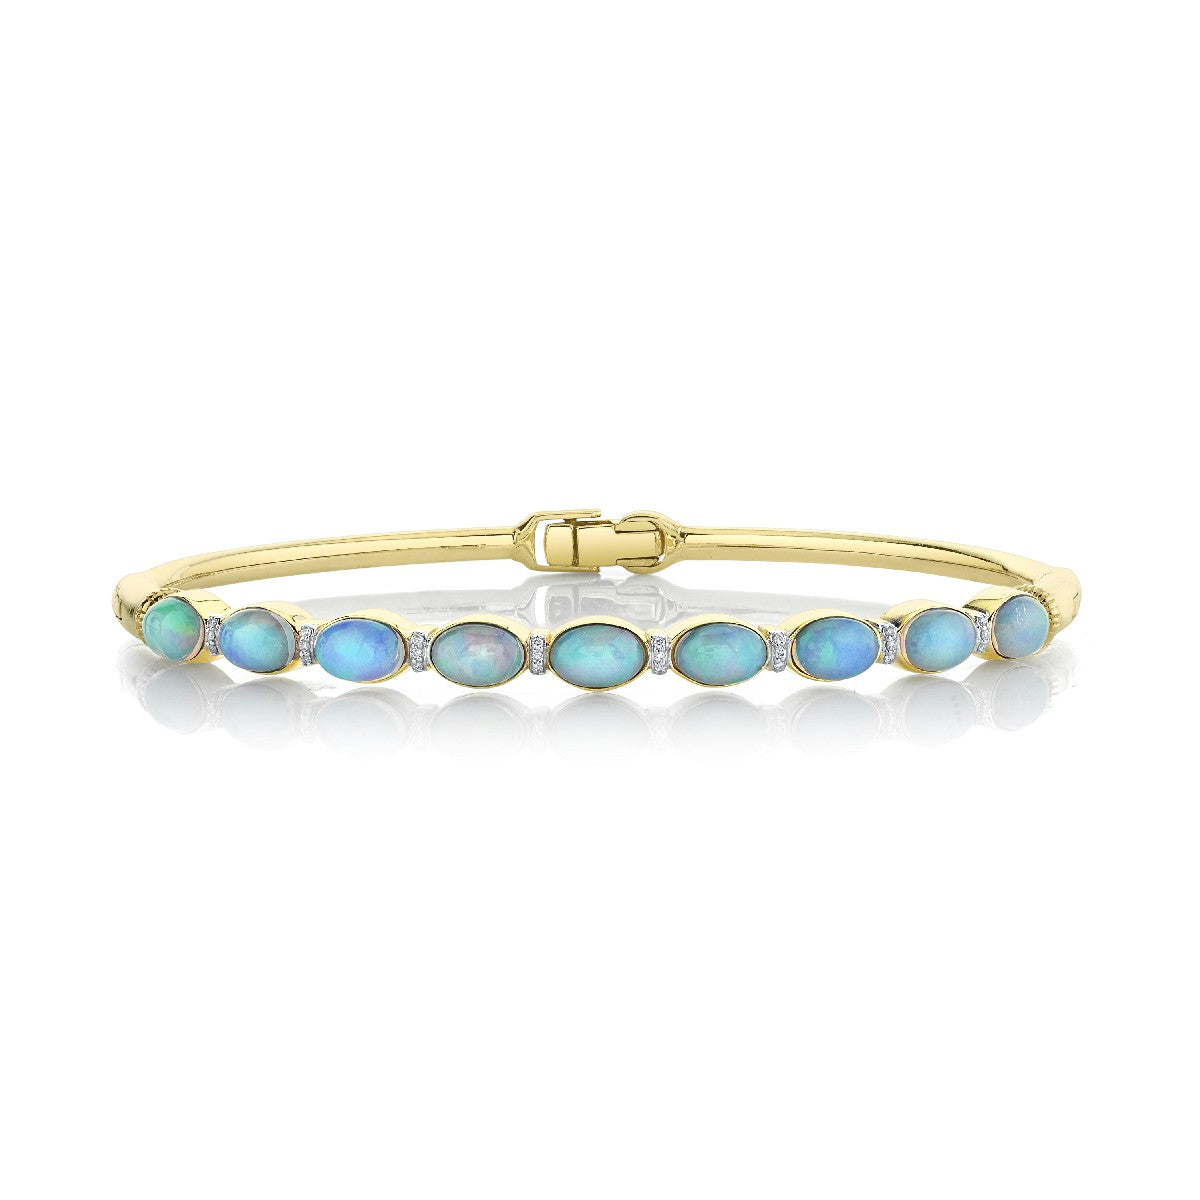 Opal Bracelet With DIamonds